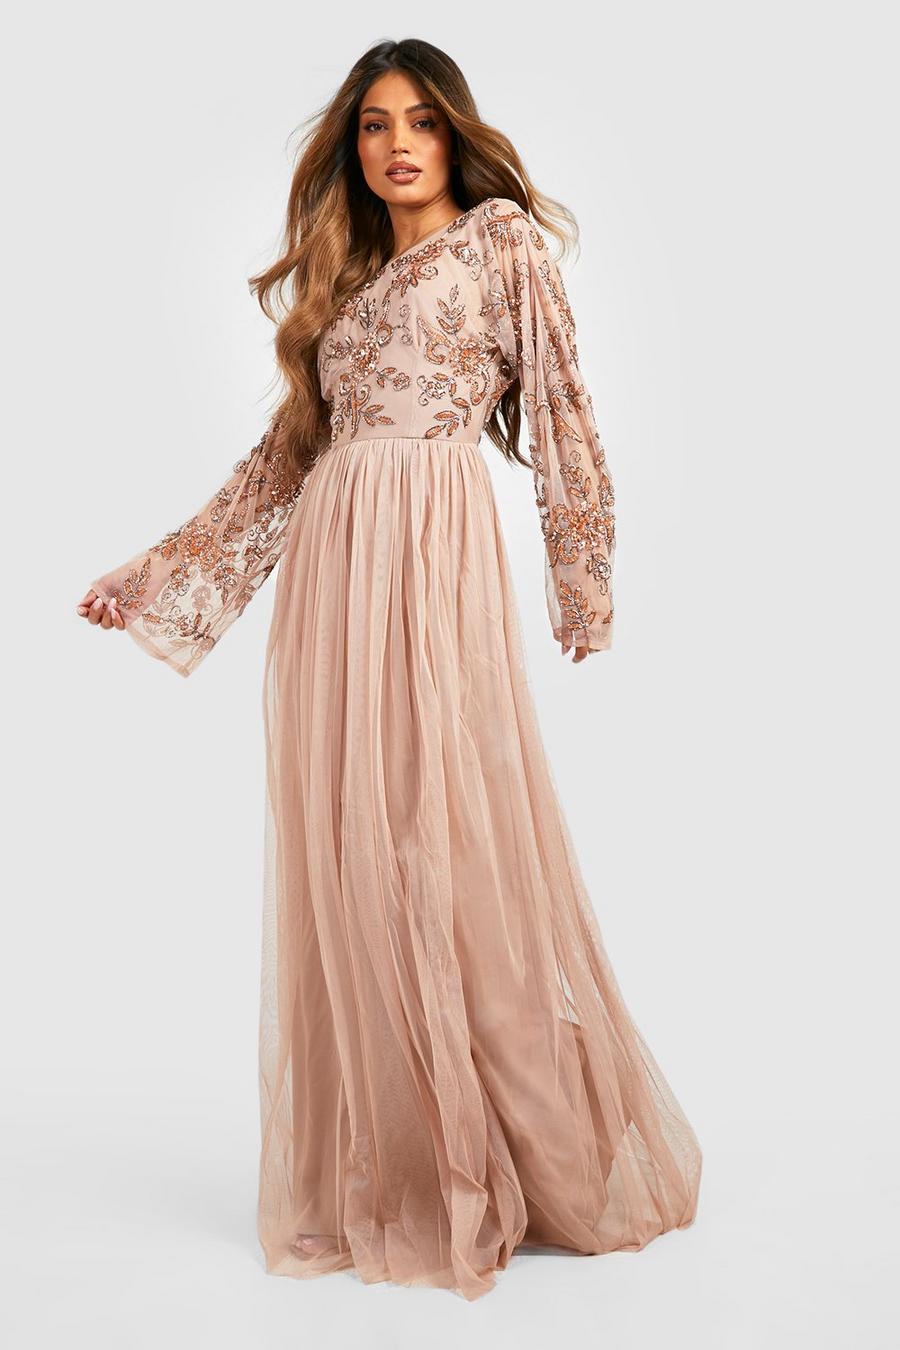 Blush rose Bridesmaid Hand Embellished Long Sleeve Maxi Dress